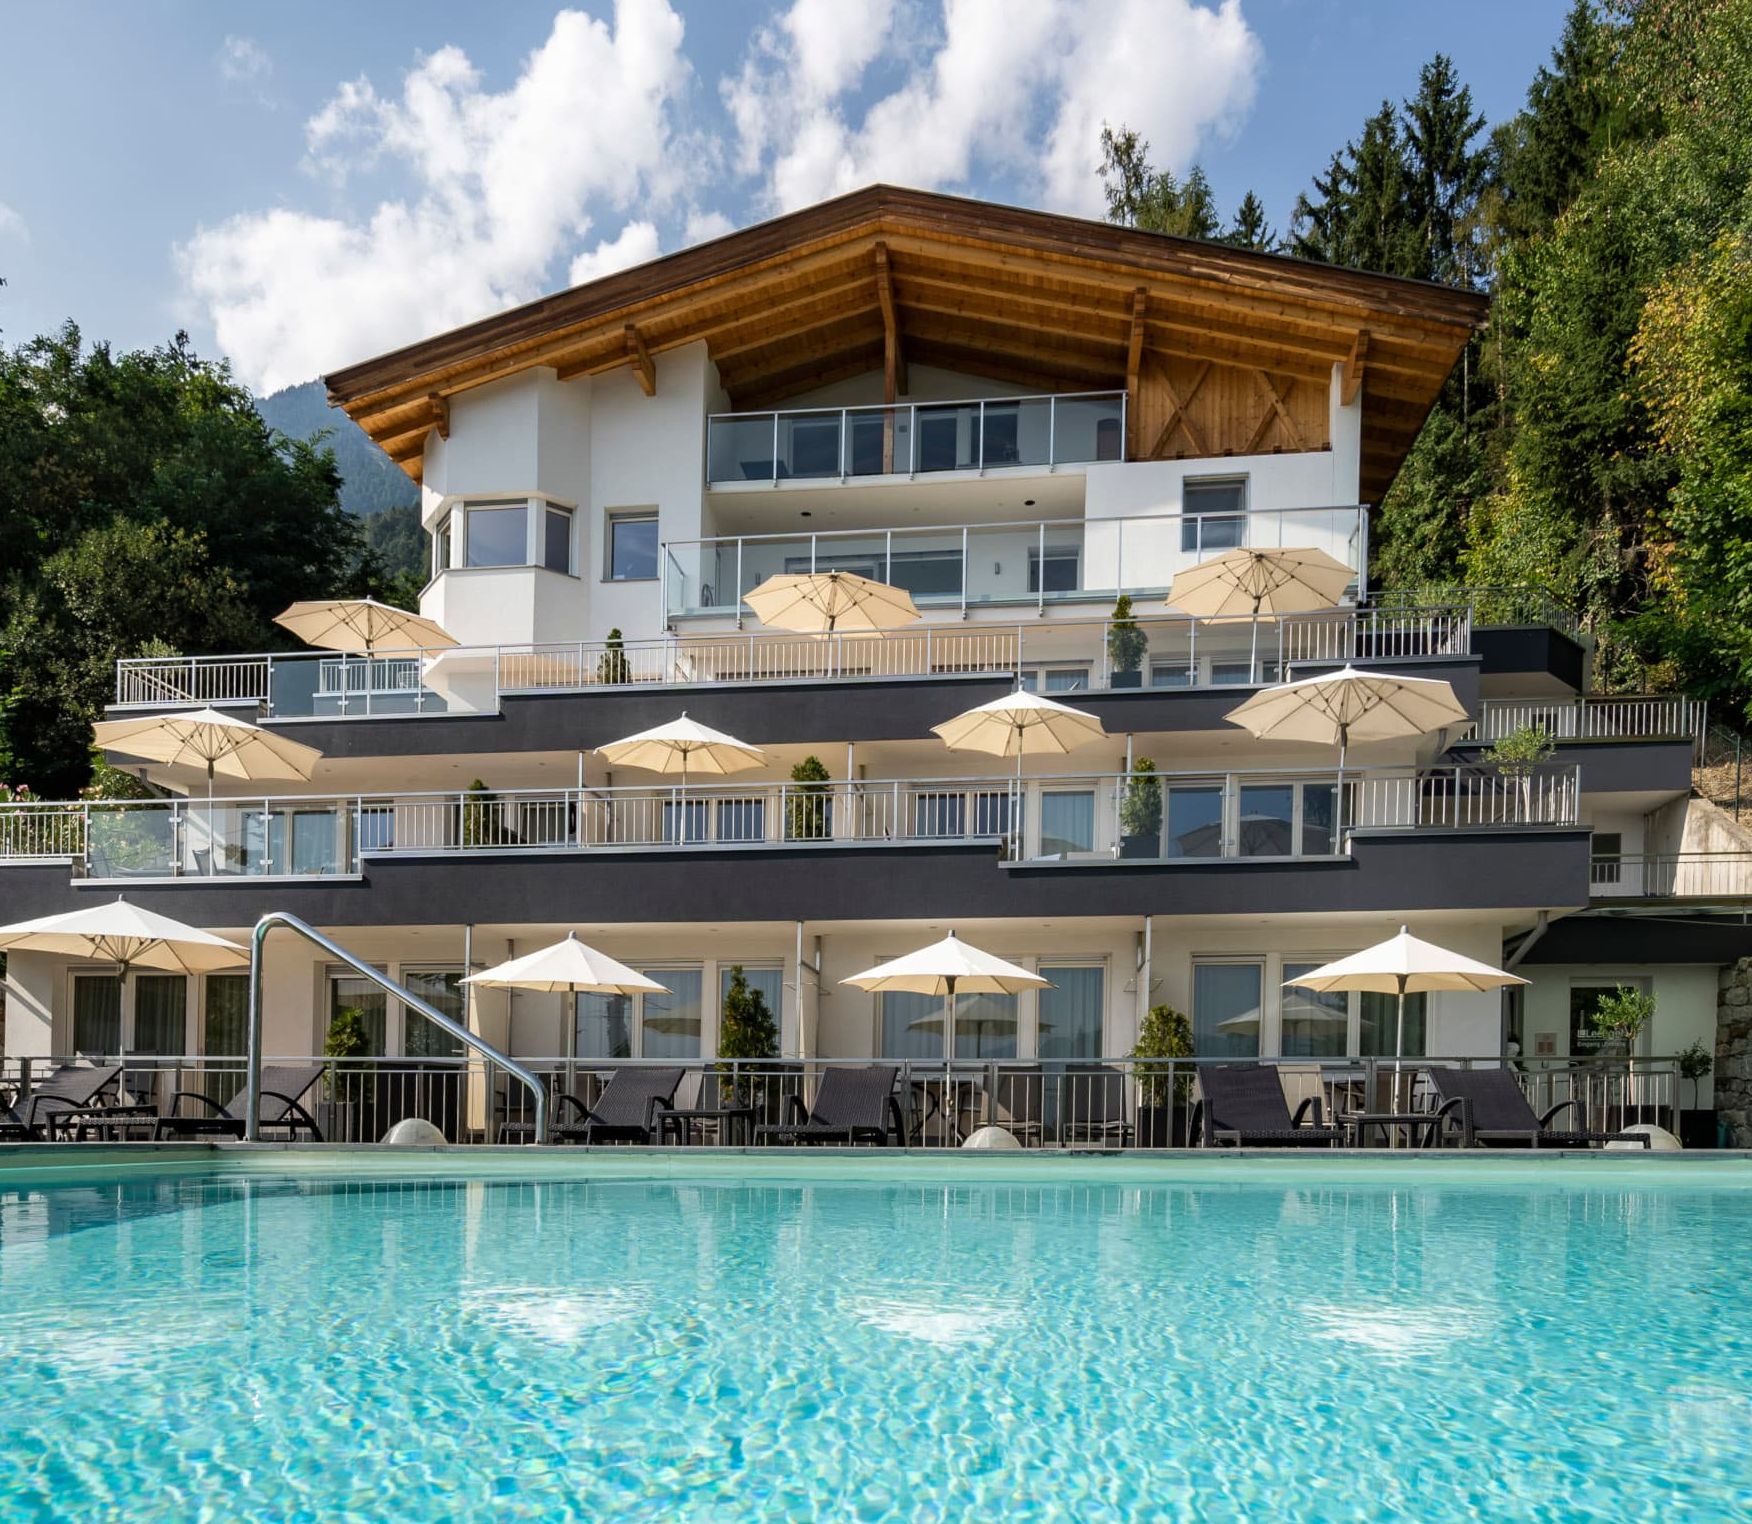 Vacanza Tirolo Residence Lechner Piscina Residence-lechner-schwimmbad-ferienwohnungen-dorf-tirol.jpg